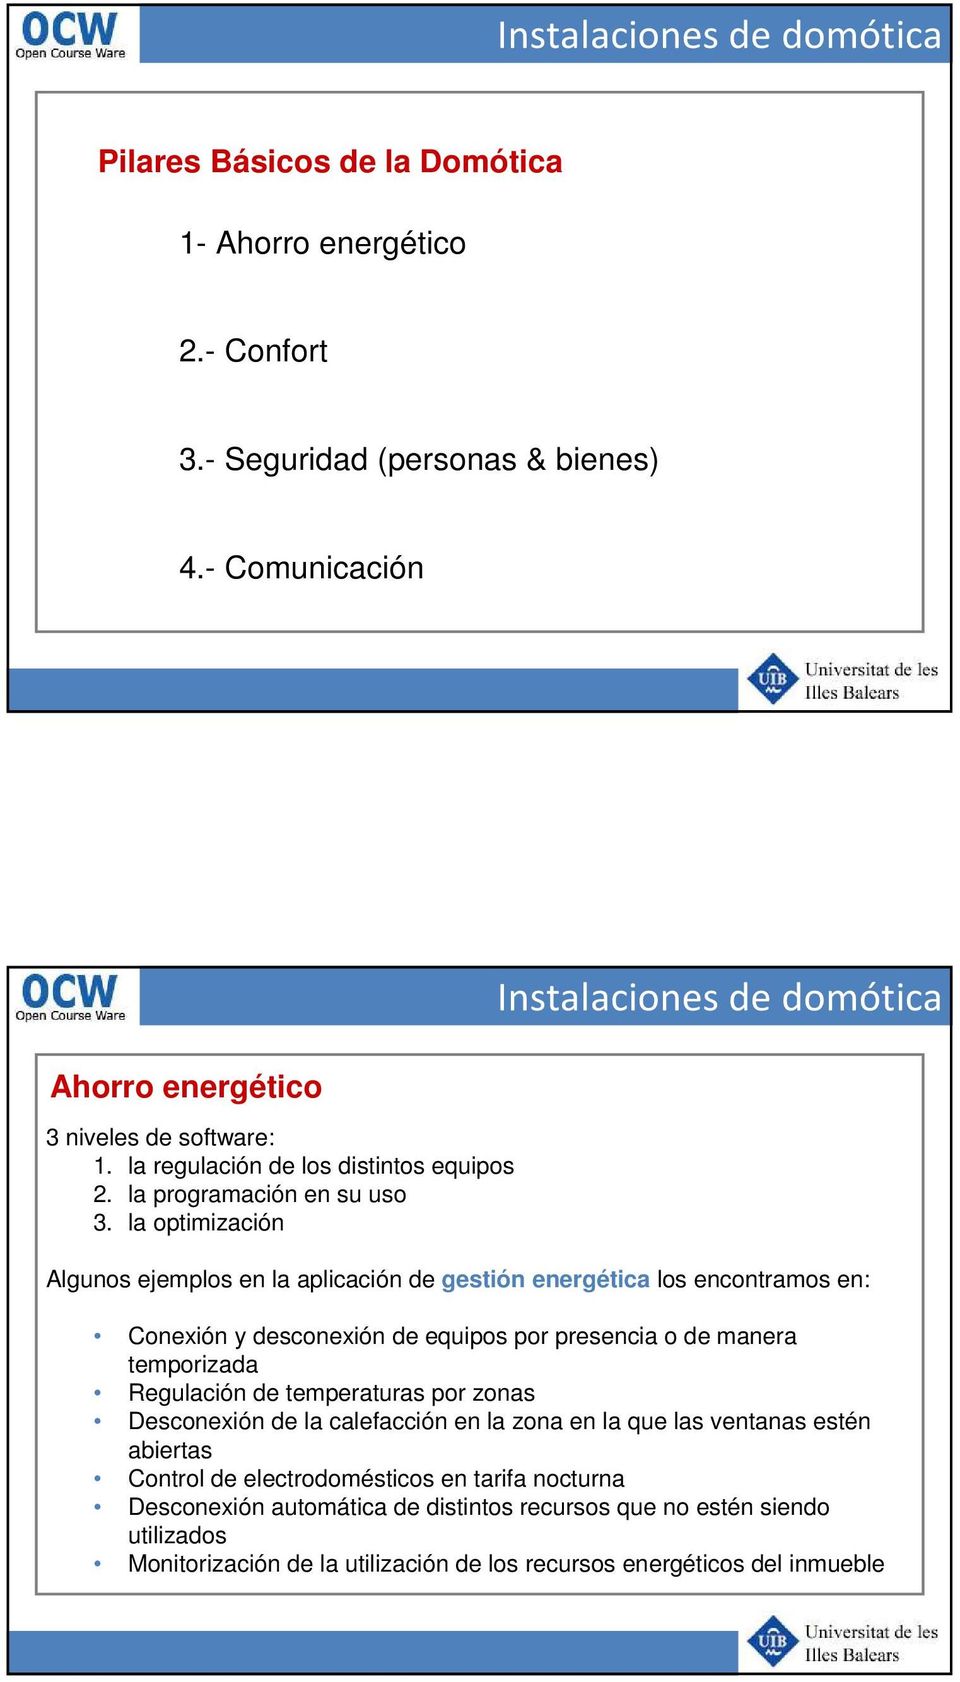 la optimización Algunos ejemplos en la aplicación de gestión energética los encontramos en: Conexión y desconexión de equipos por presencia o de manera temporizada Regulación